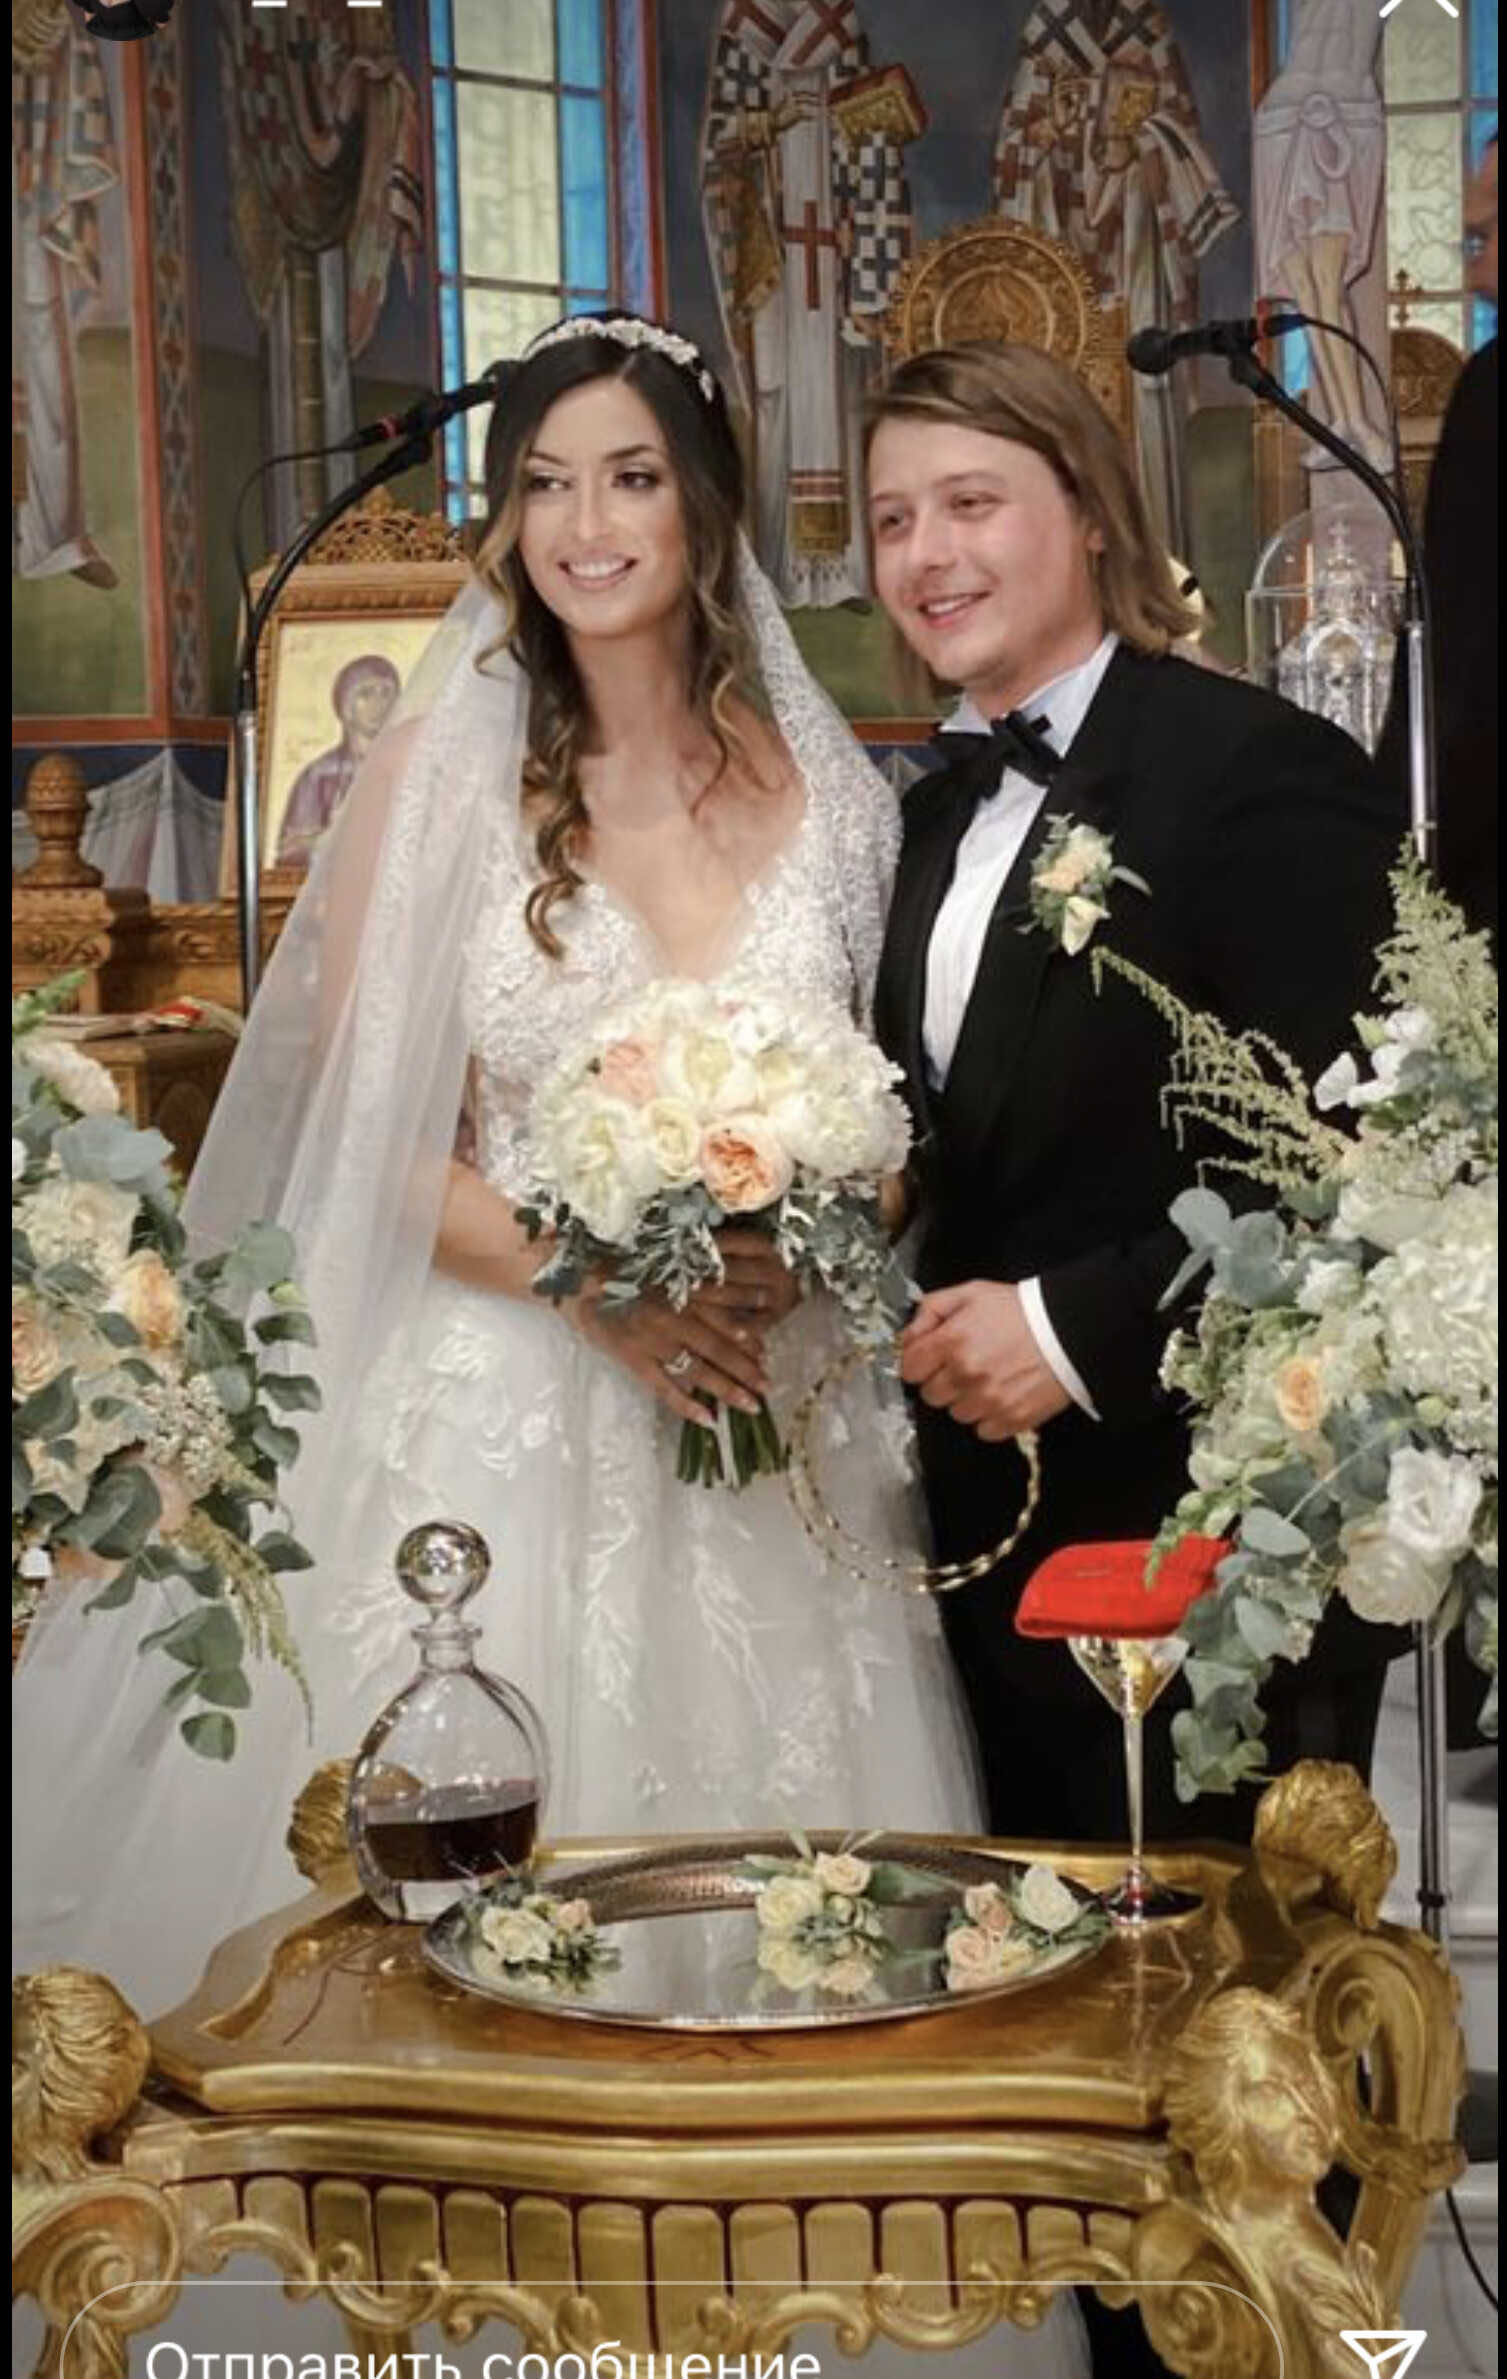 Пасынок Стаса Михайлова женился: снимки с венчания и последующей пирушки